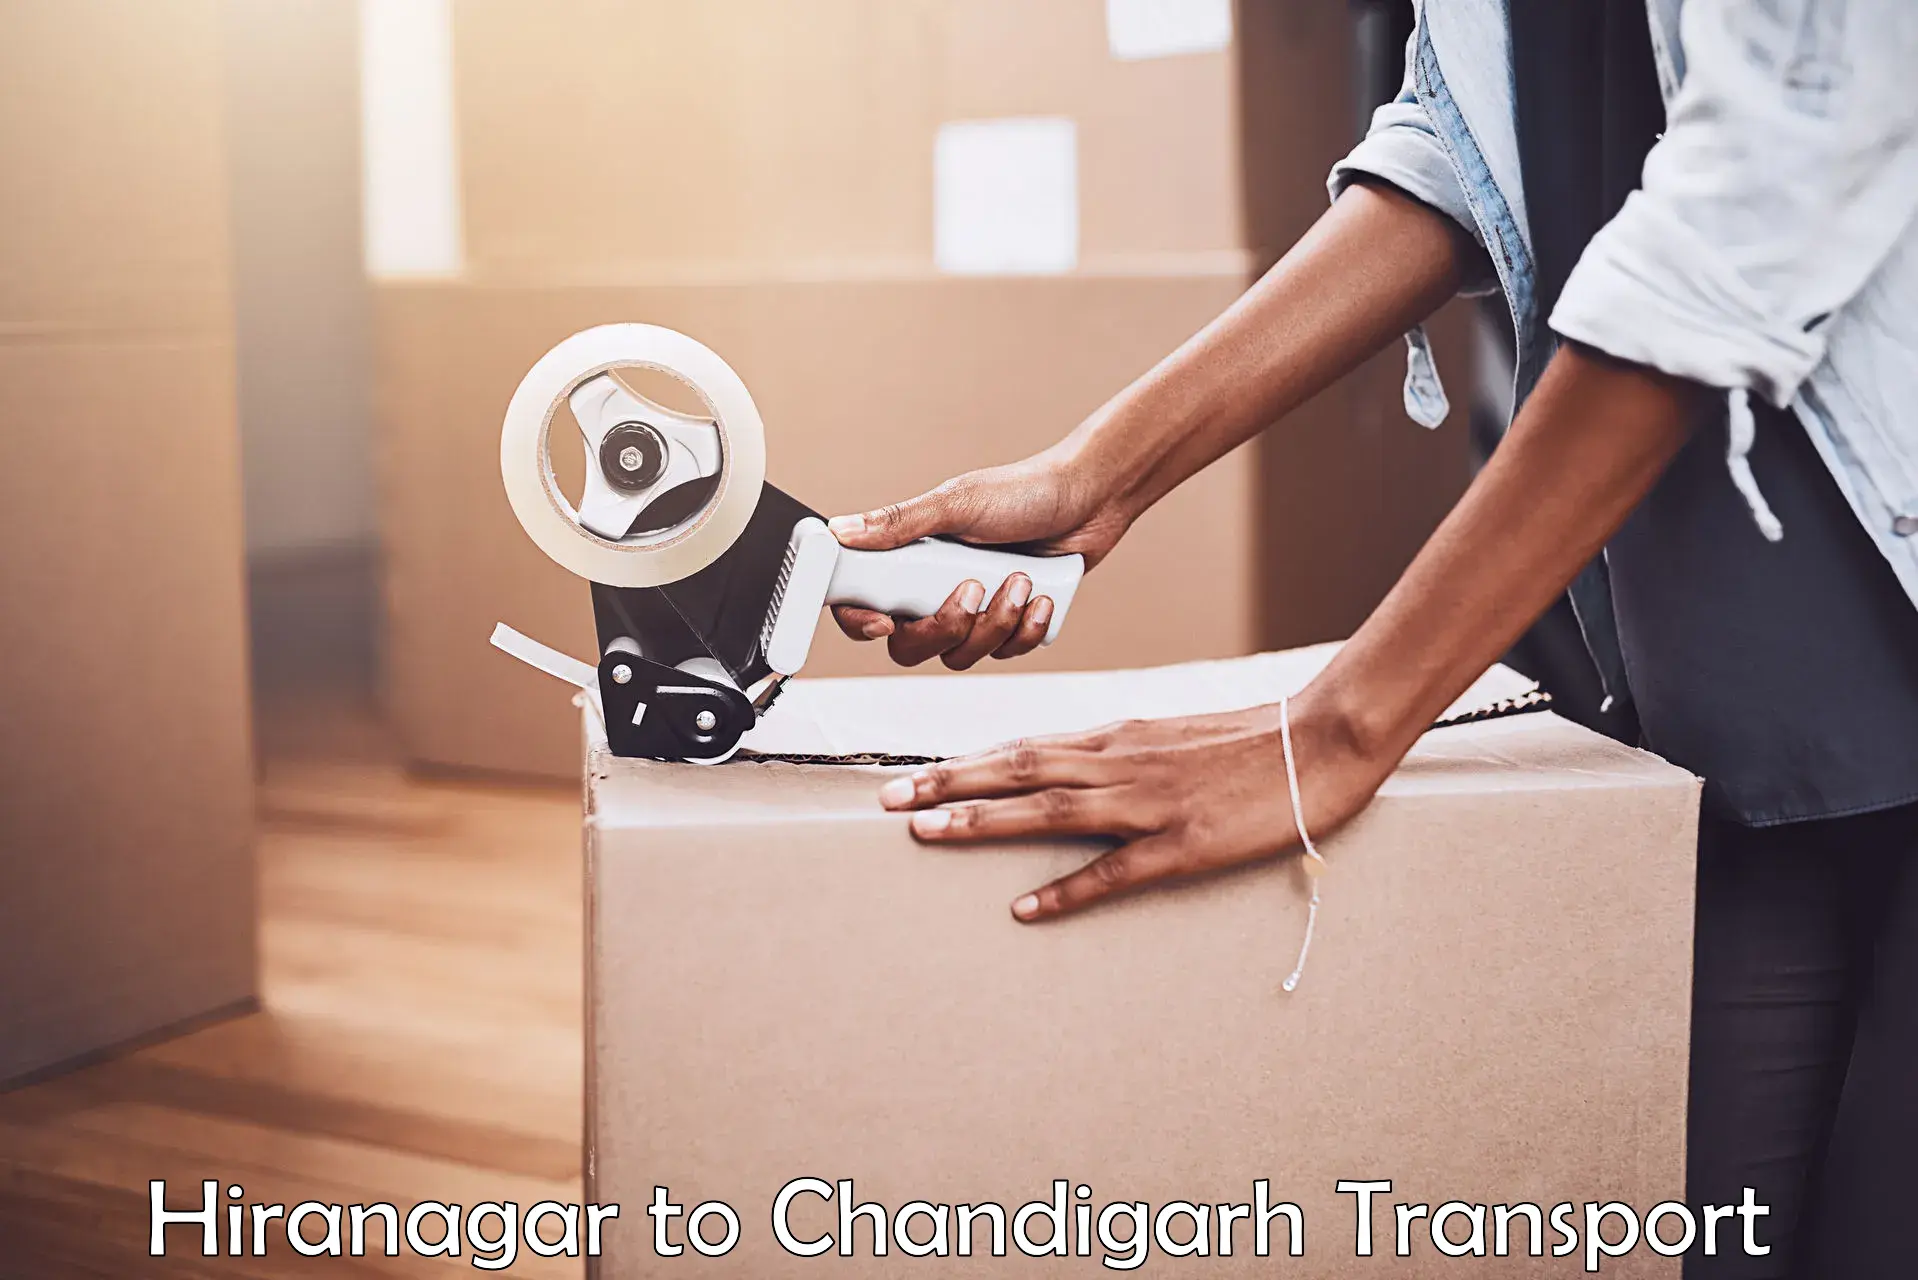 Lorry transport service Hiranagar to Chandigarh